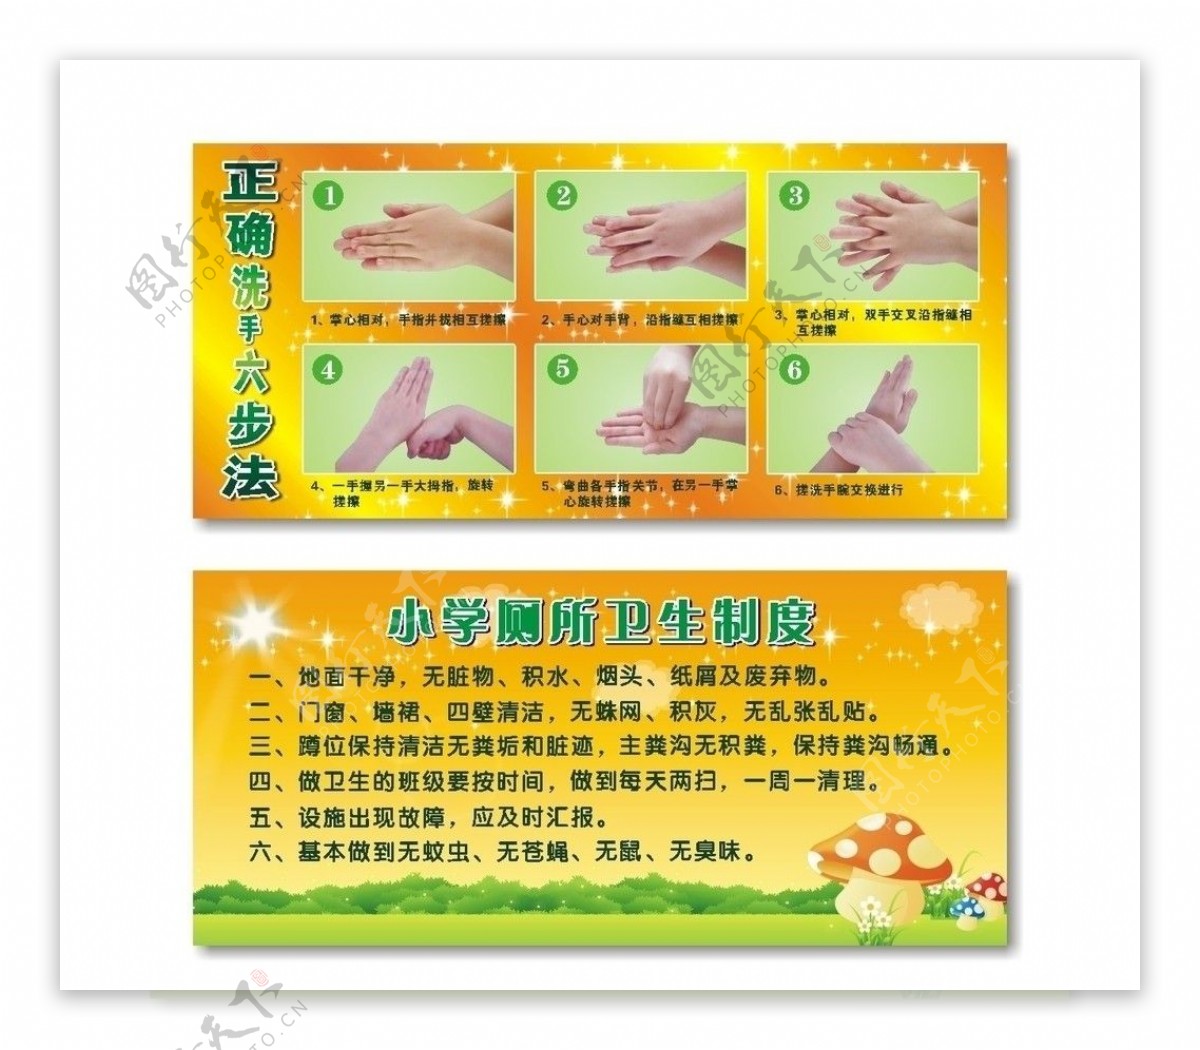 洗手学校洗手六步图片